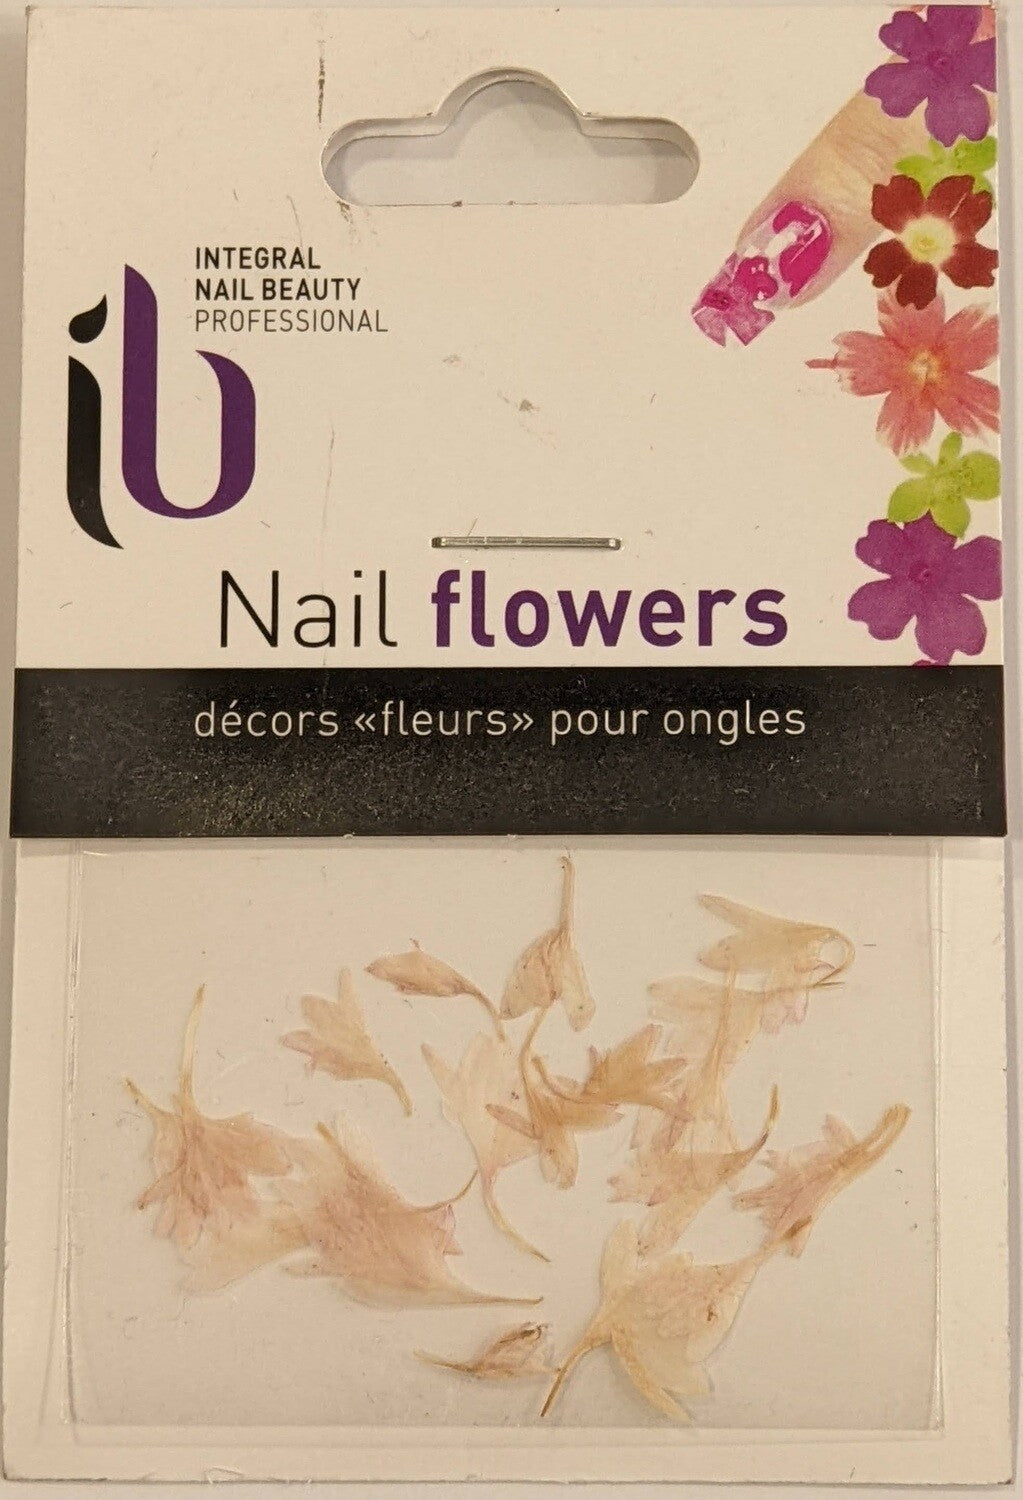 Nail Flowers - Décors "fleurs" pour ongles 2